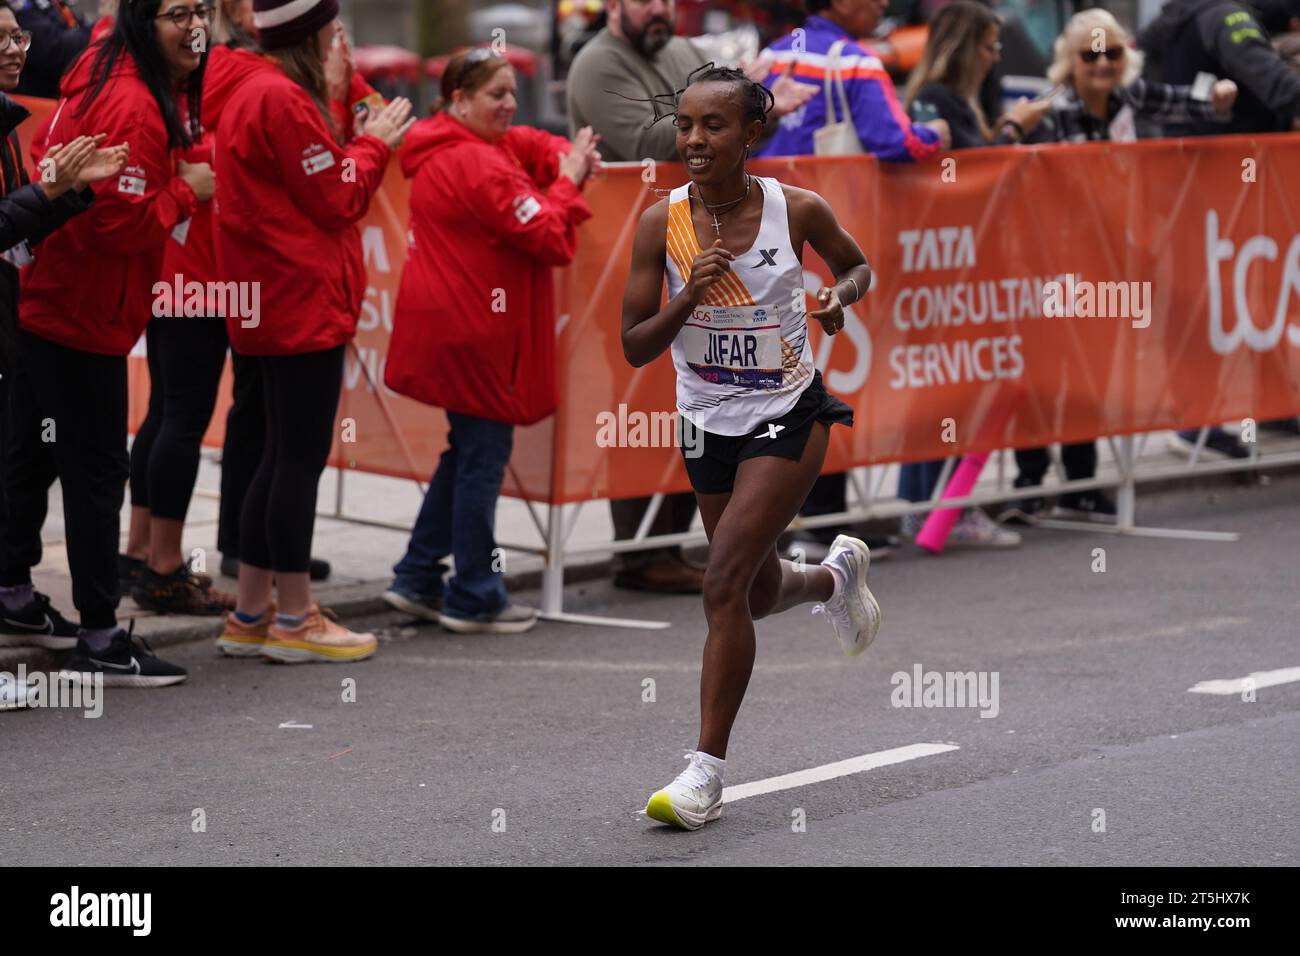 New York, New York, USA. November 2023. (SPO) TCS New York City Marathon 2023. 5. November 2023, New York, USA: Tamirat Tola aus Äthiopien schlägt Rekorde und gewinnt das NYC Marathon Männerrennen in 2:04:58, während Hellen Obiri aus Kenia das Frauenrennen mit 2:27:23 Uhr dominiert. Albert Korir und Letesenbet Gidey sichern sich den zweiten Platz, während Shura Kitata und Sharon Lokedi den 3. Platz beim prestigeträchtigen TCS New York Marathon 2023 sichern. Quelle: ZUMA Press, Inc./Alamy Live News Stockfoto